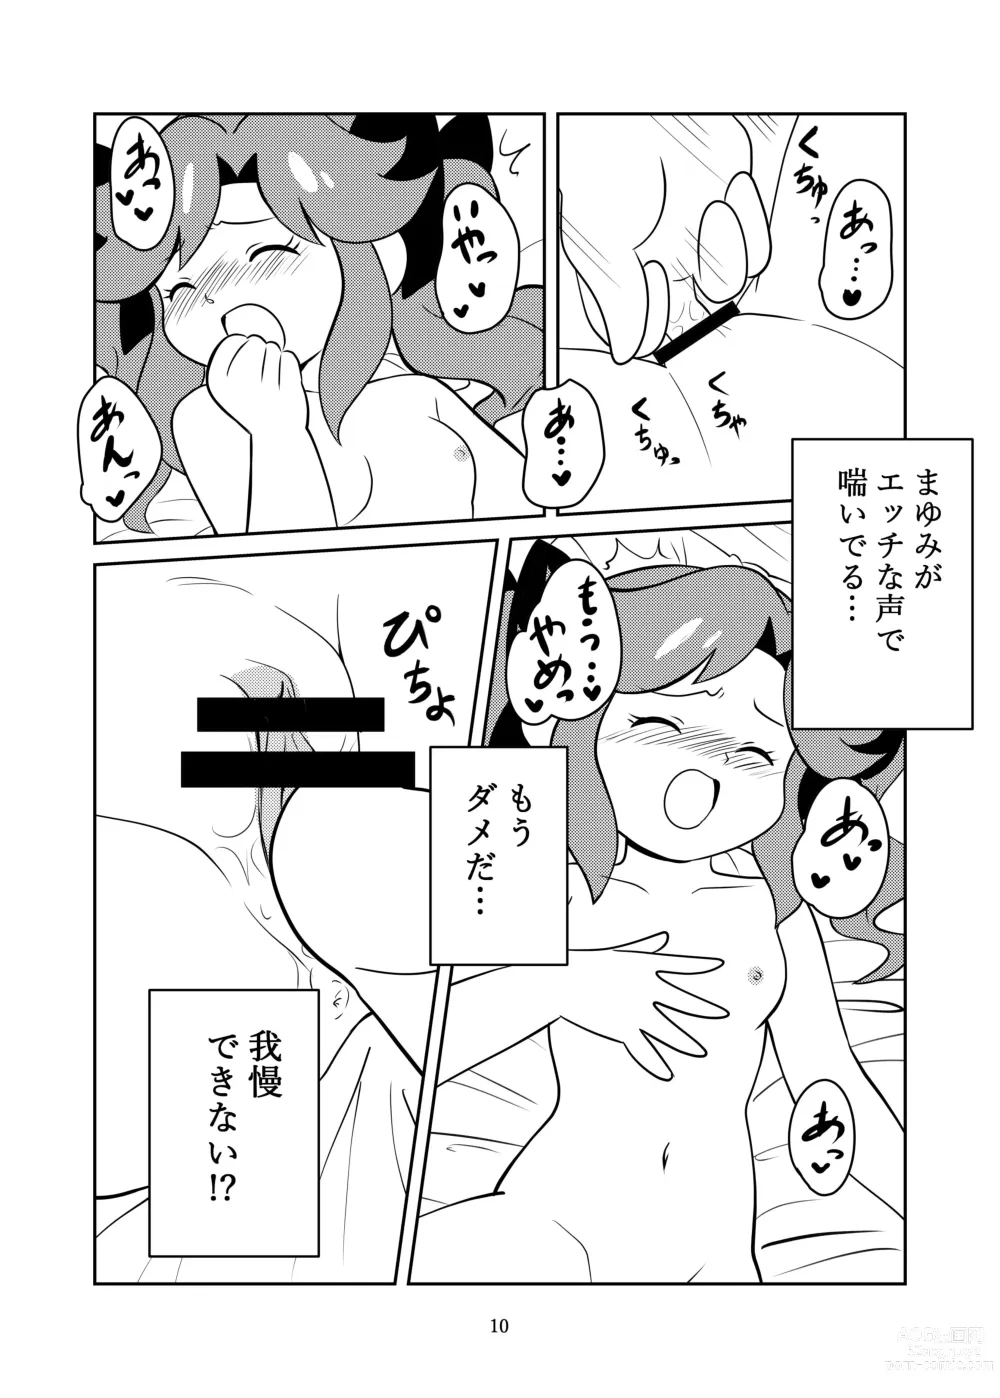 Page 12 of doujinshi Kyoumi Shinshin